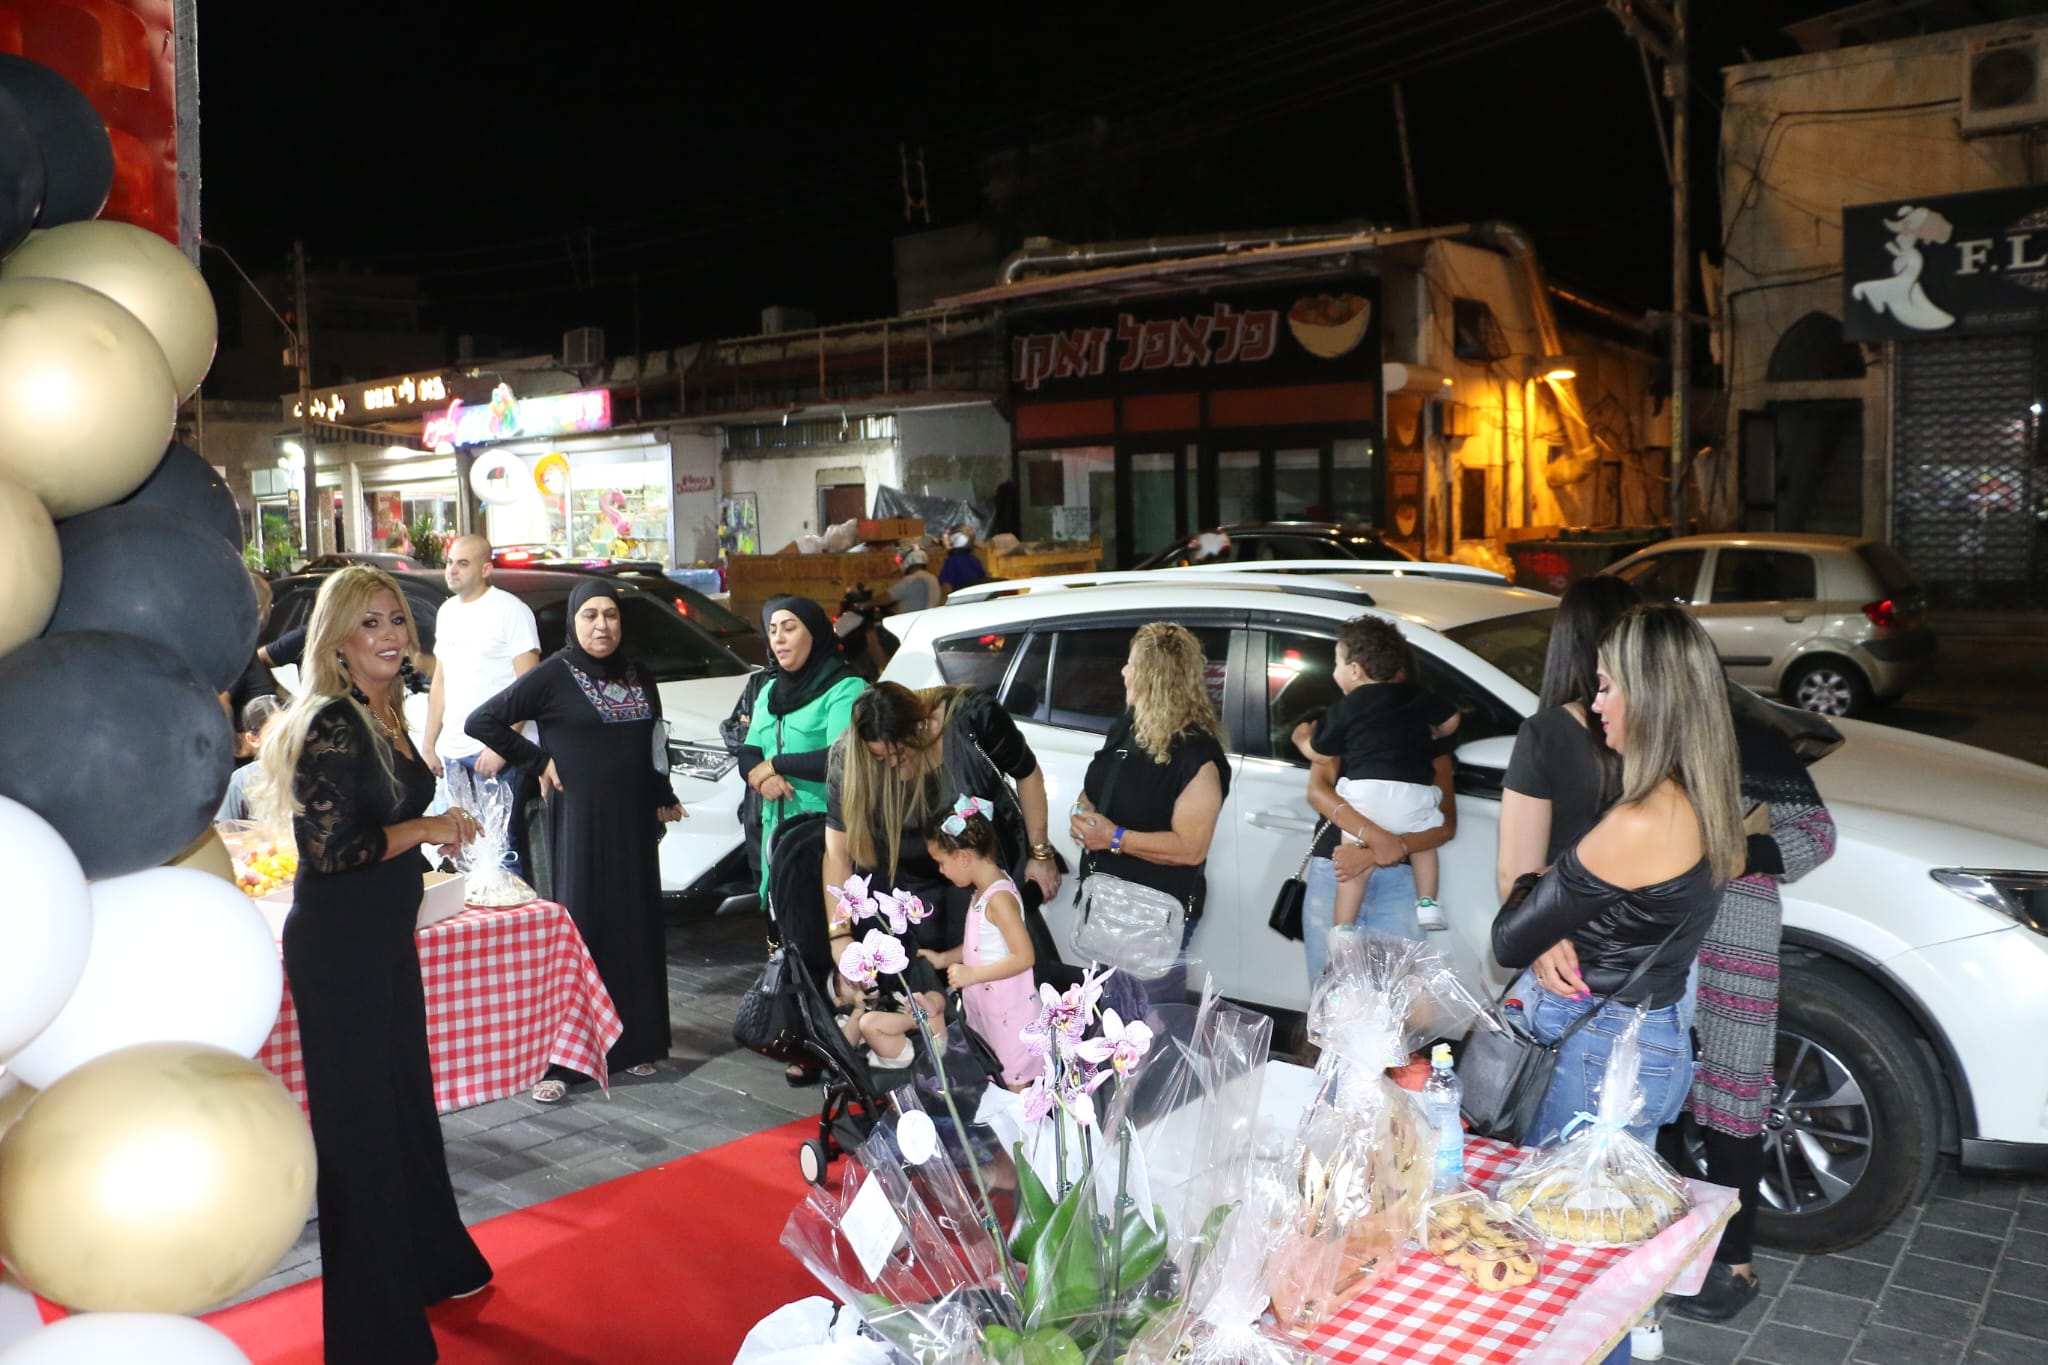 بالصور: افتتاح صالون غادة سموني للنساء في يافا 